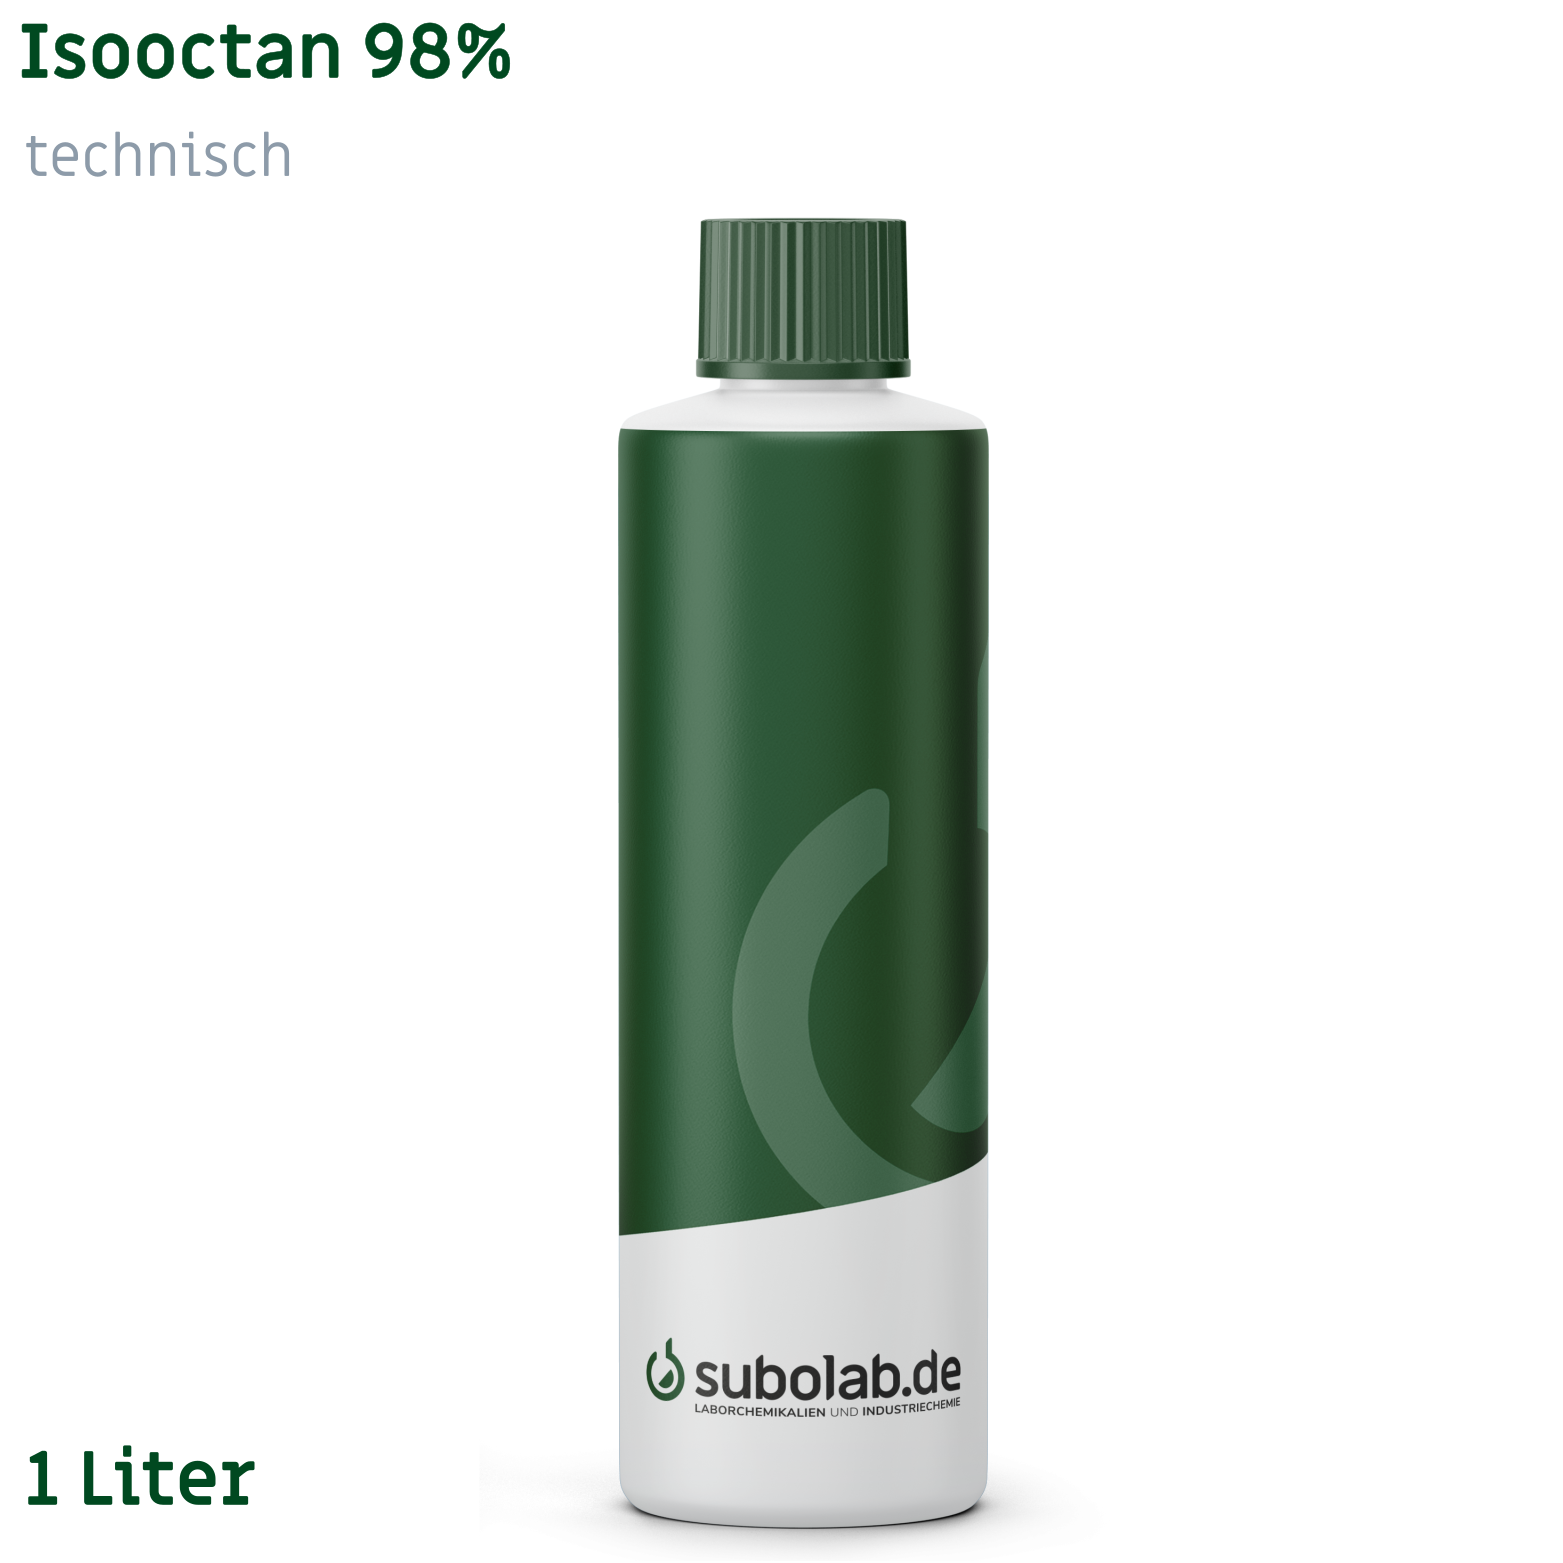 Bild von Isooctan 98% technisch (1 Liter)